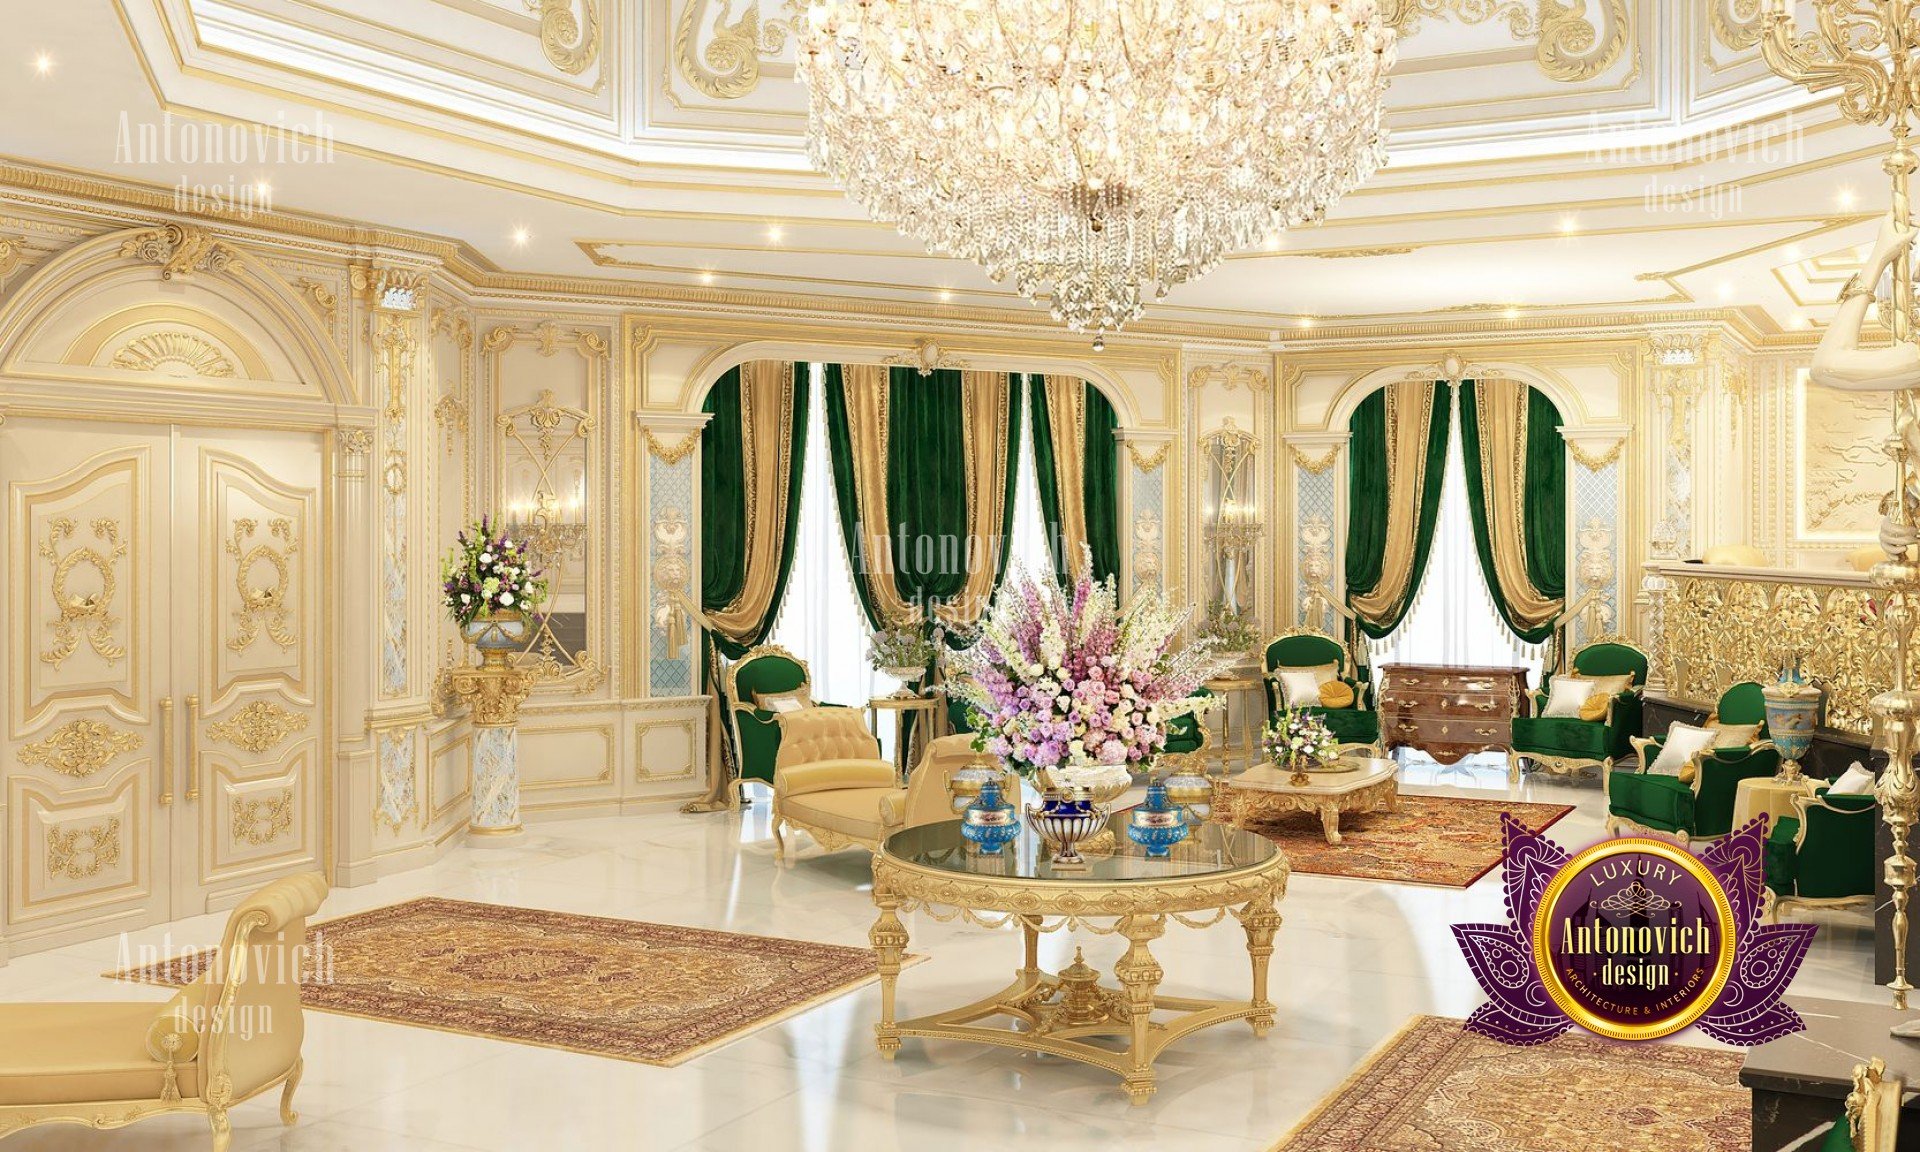 Classic luxury interior